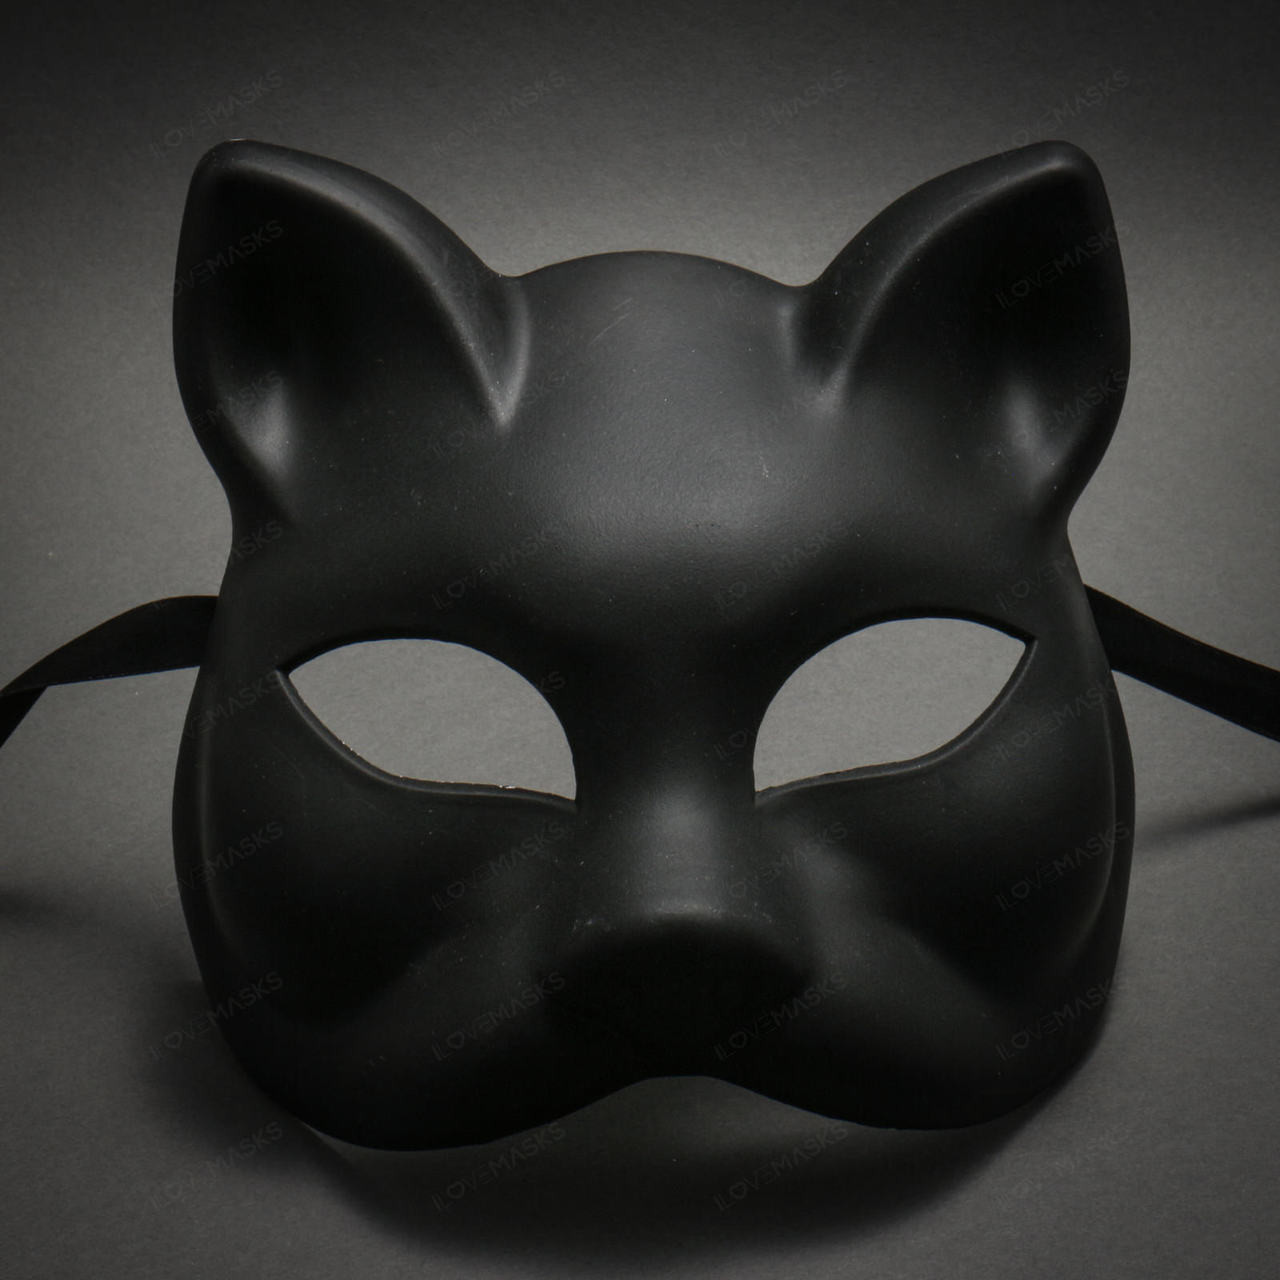 Venetian Cat mask –